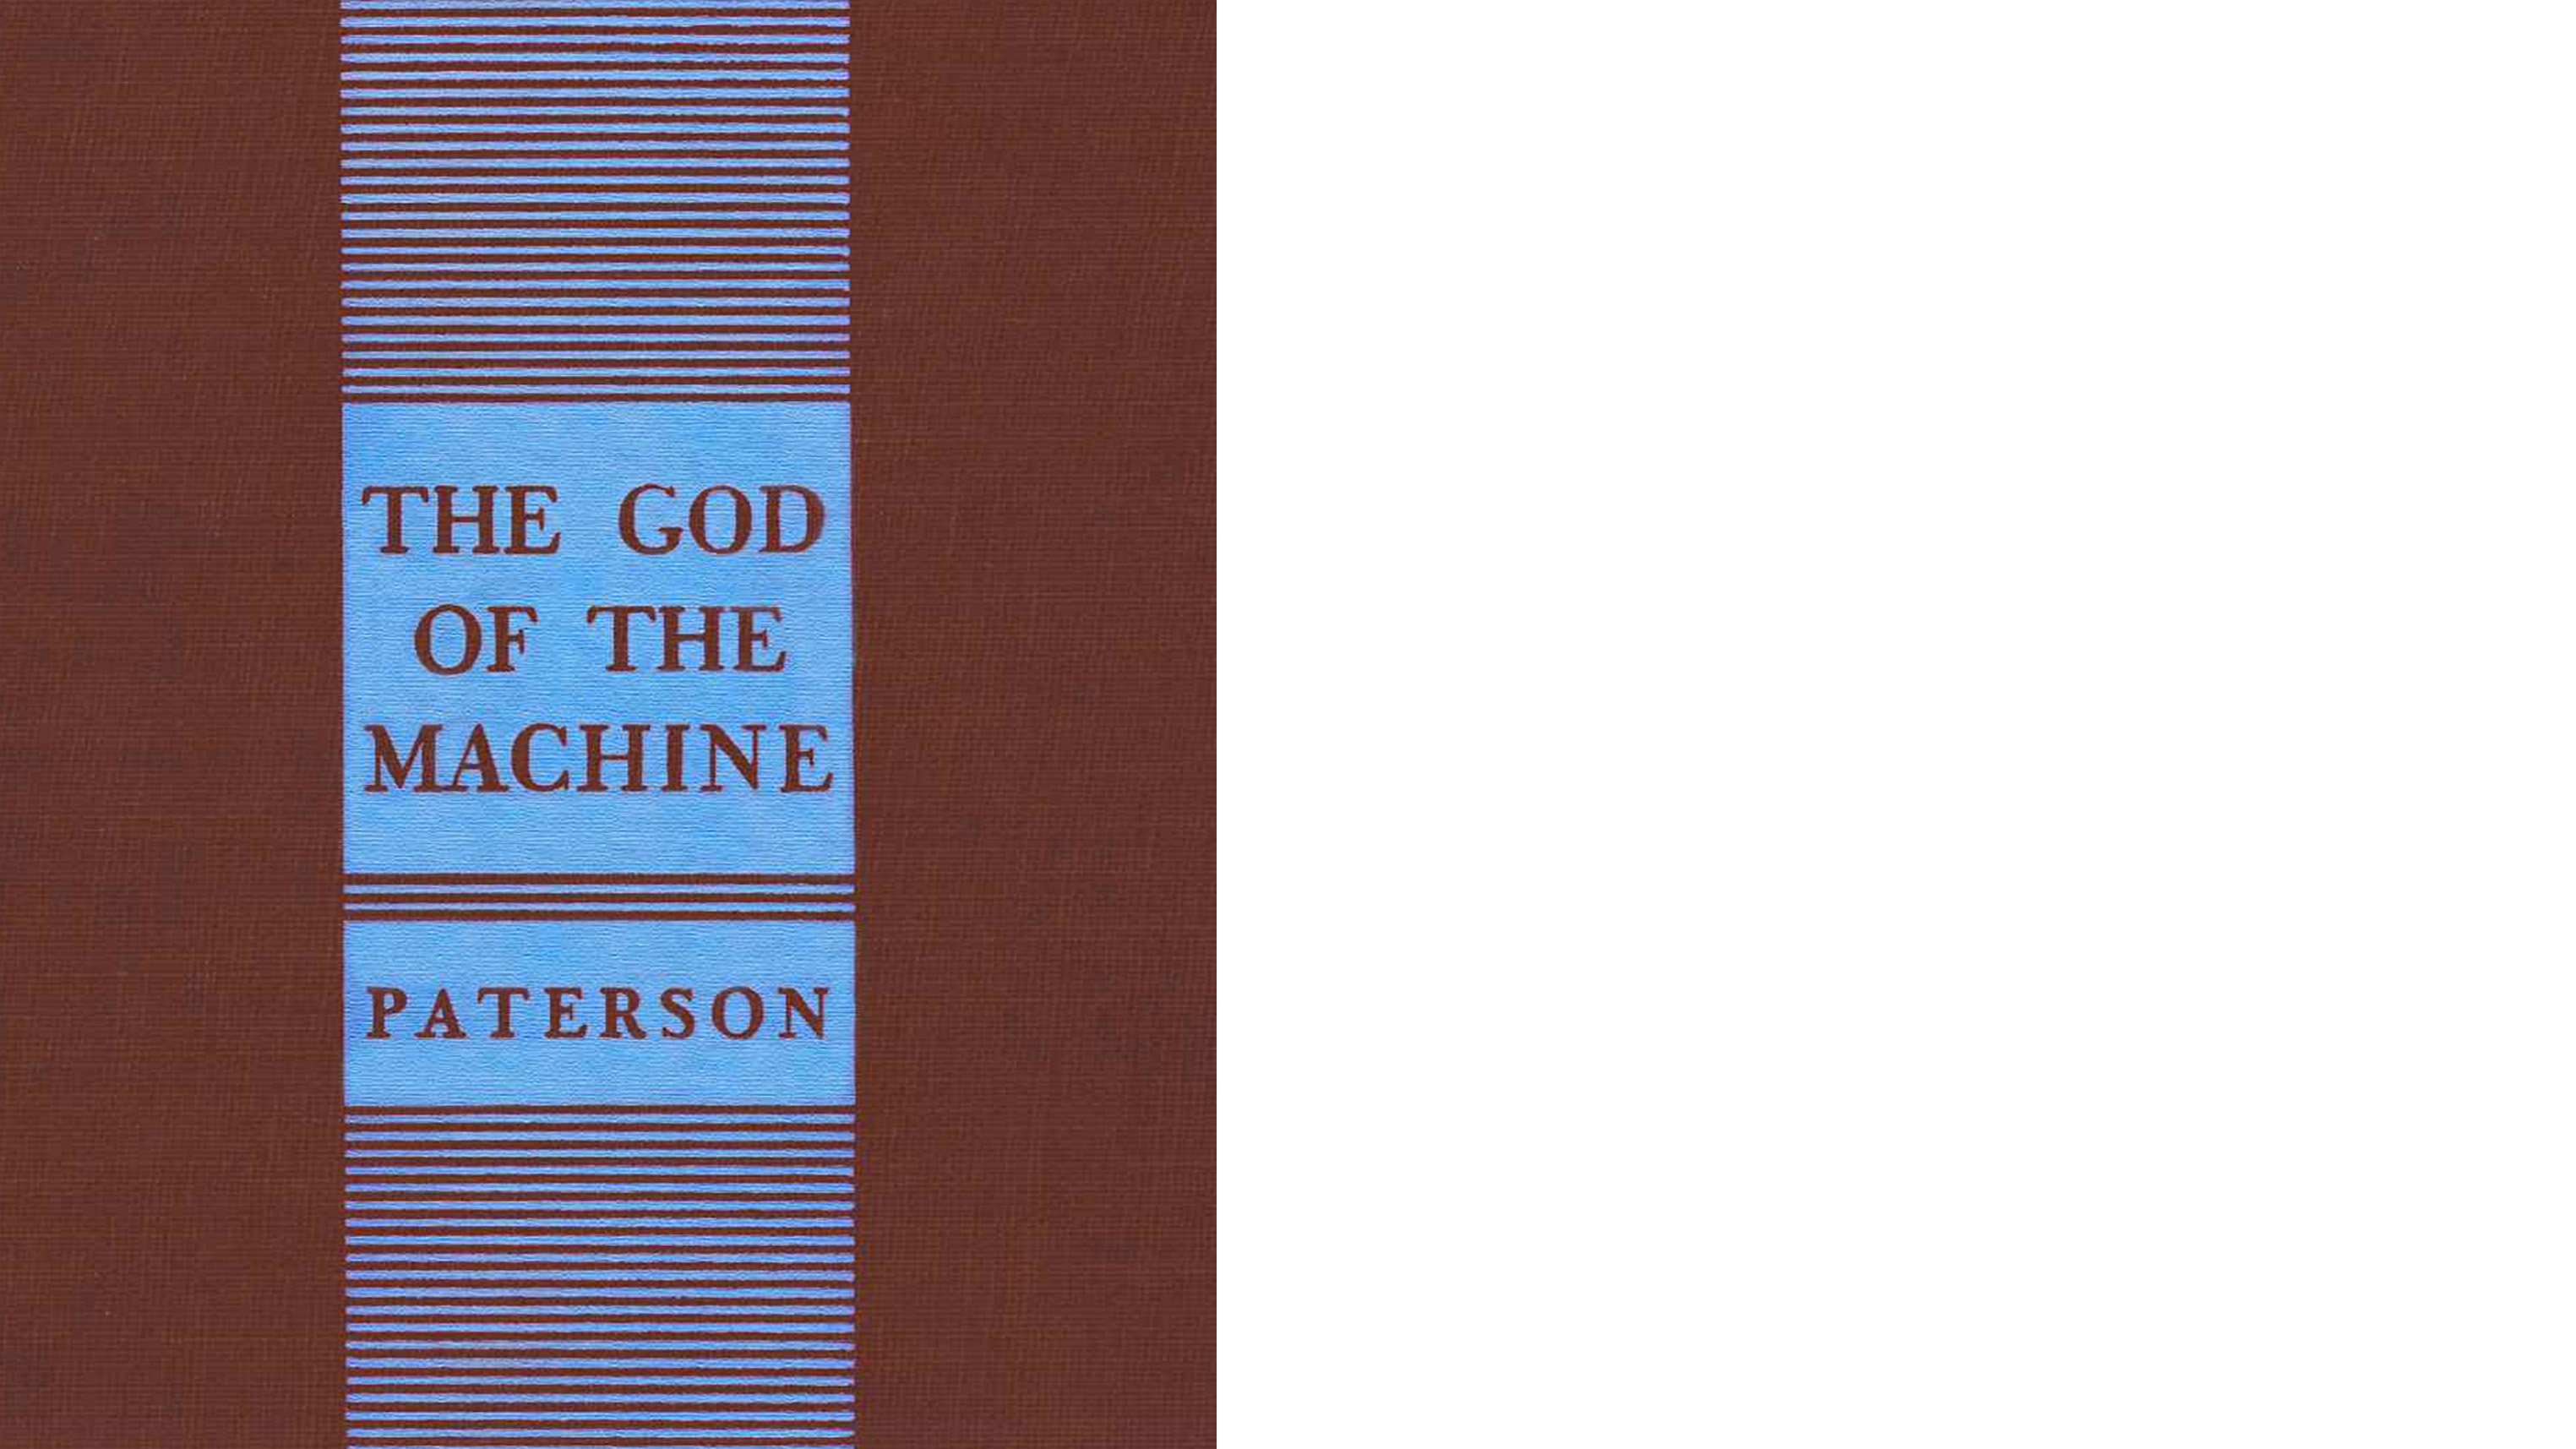 Kể từ khi xuất bản năm 1943, tác phẩm “The God of the Machine” (Quyền Năng Của Cỗ Máy) vẫn là một lời nhắc nhở hữu ích và sống động về những mối nguy hại của chủ nghĩa toàn trị dành cho độc giả. (Ảnh: Tài sản công)